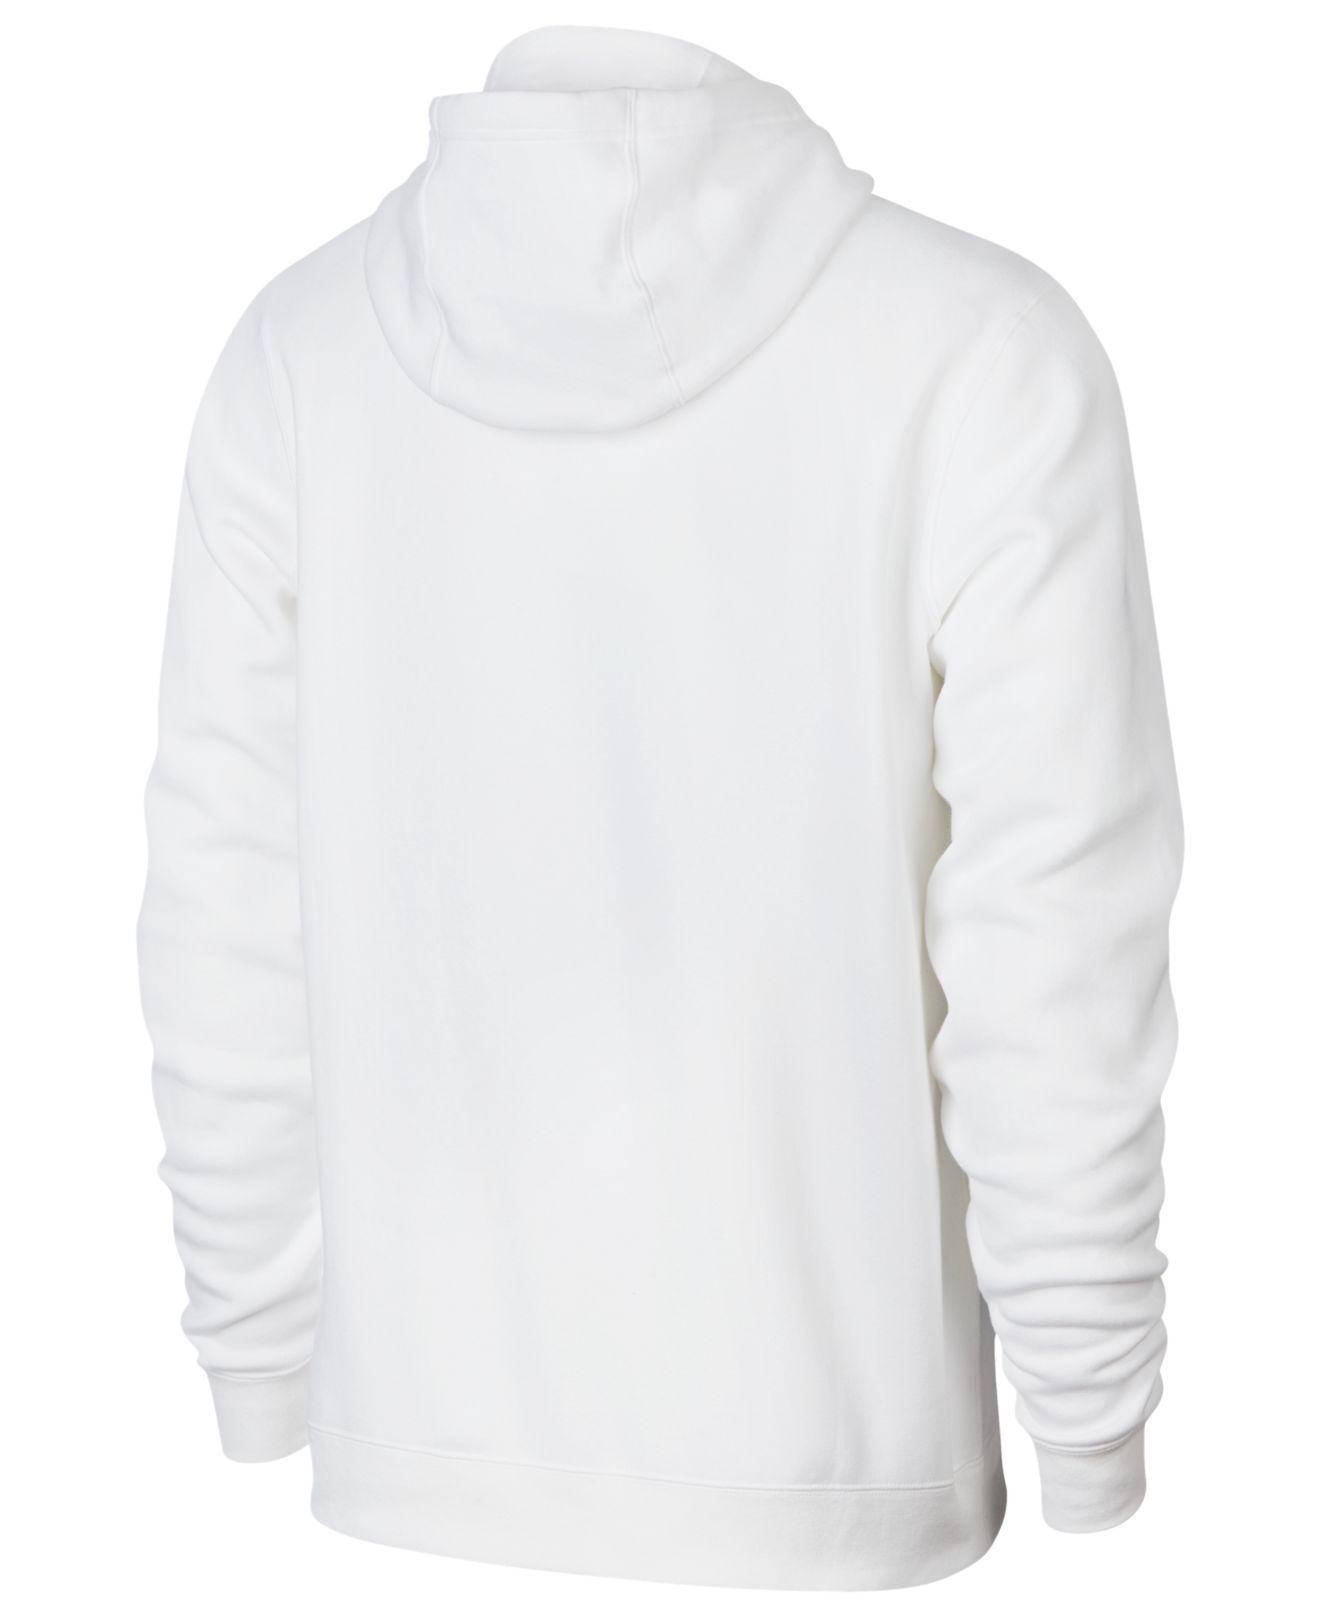 Nike Fleece Sportswear Futura Logo Hoodie S in White for Men - Lyst